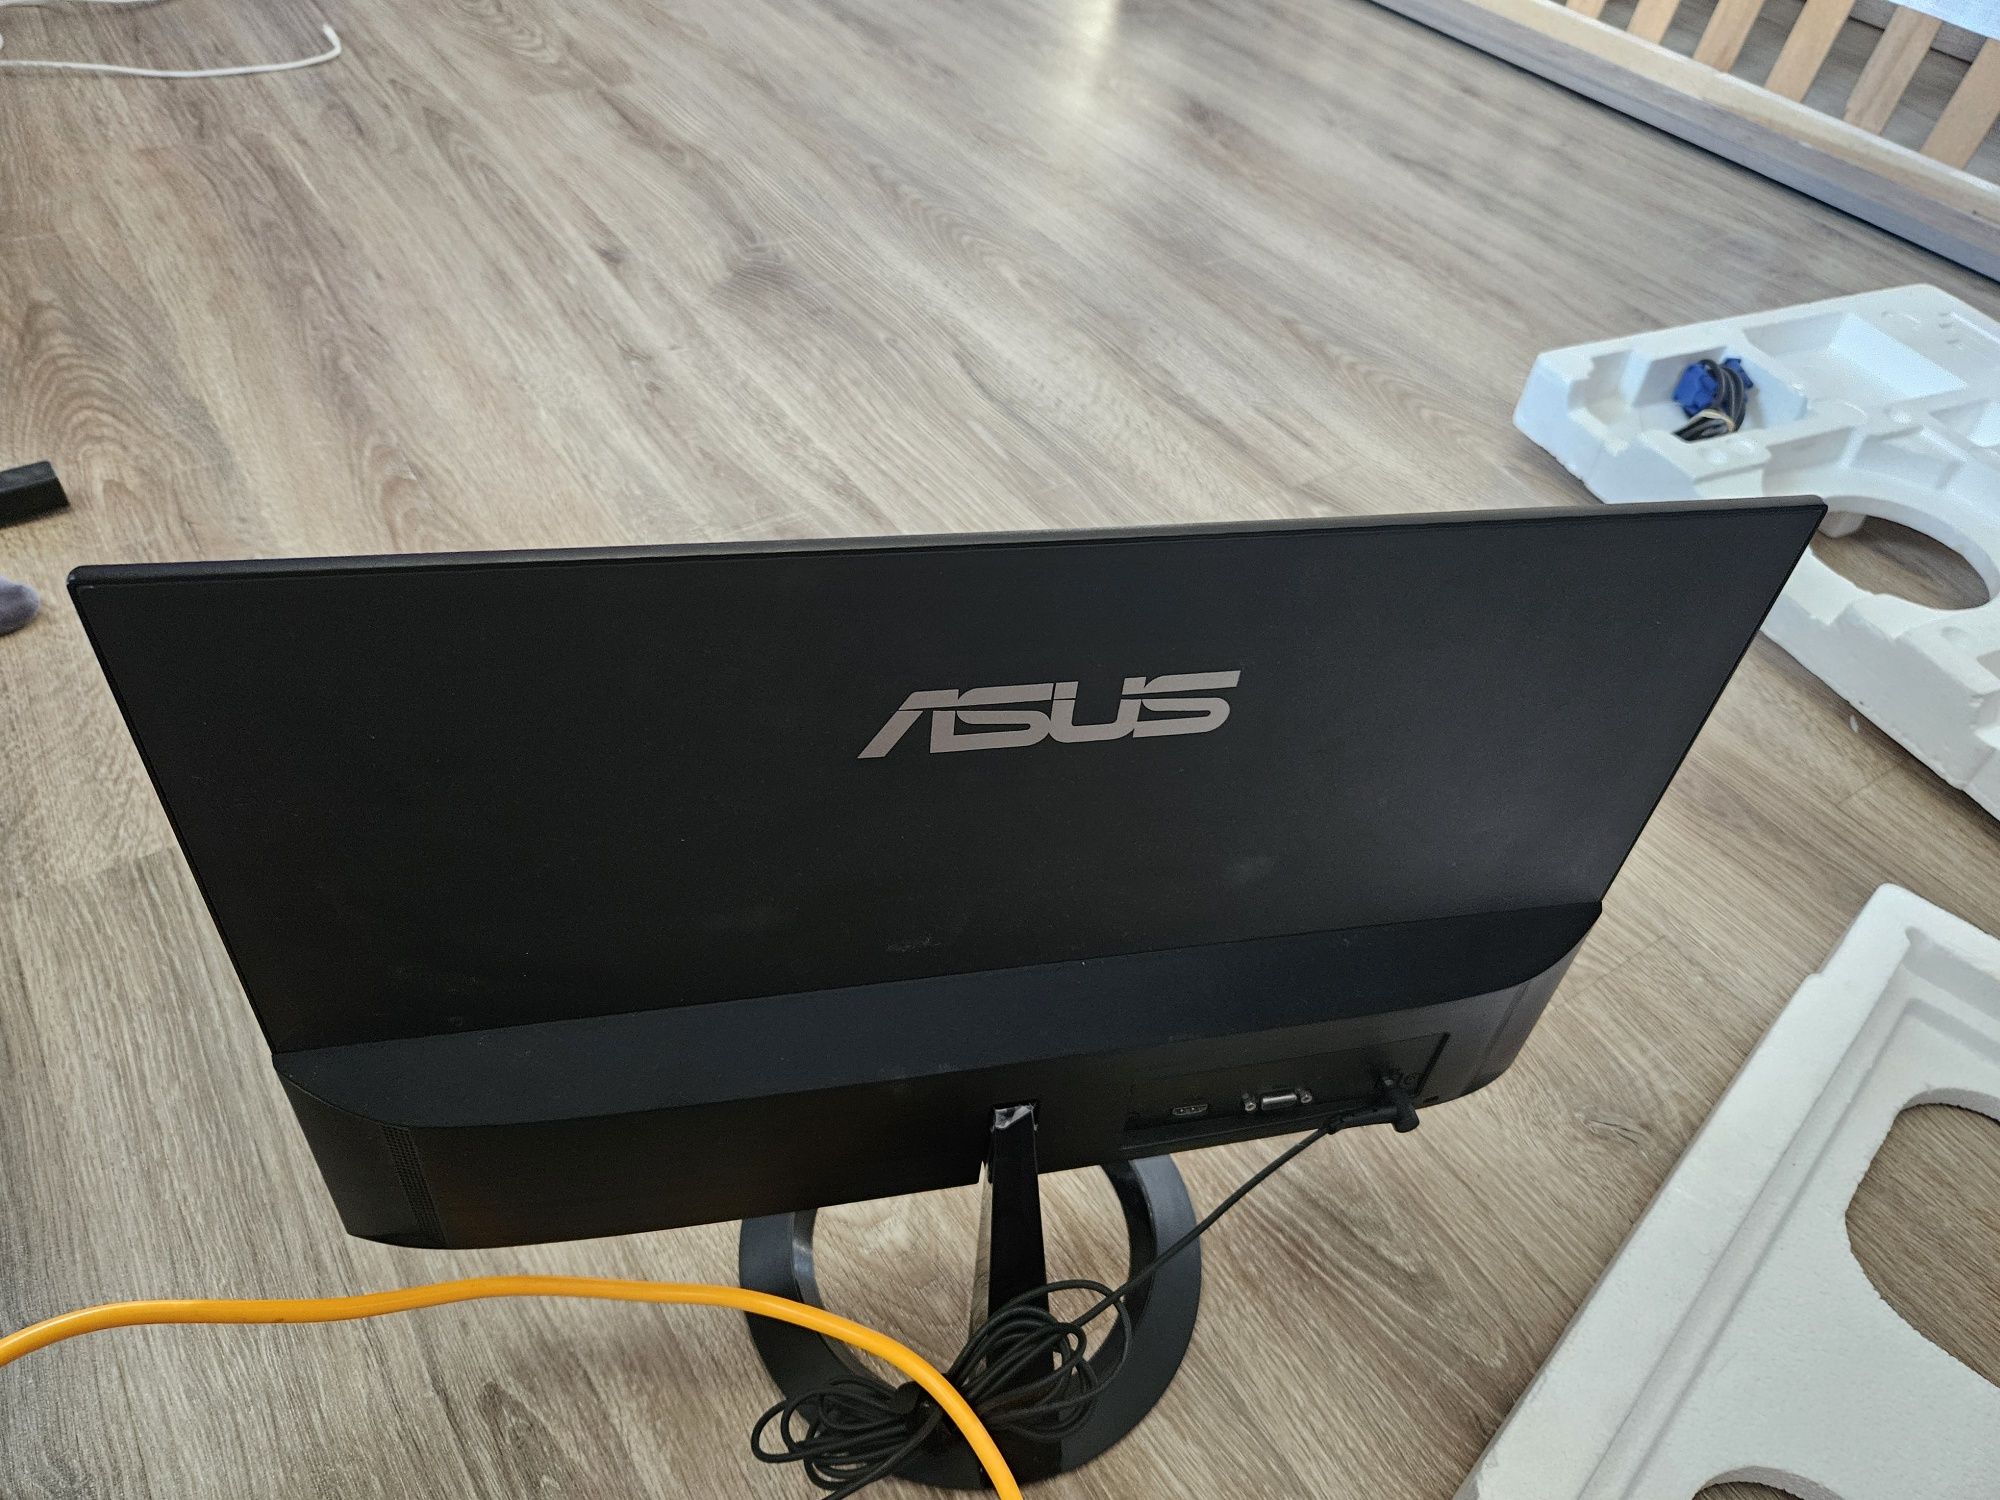 Asus VZ229 LCD monitor